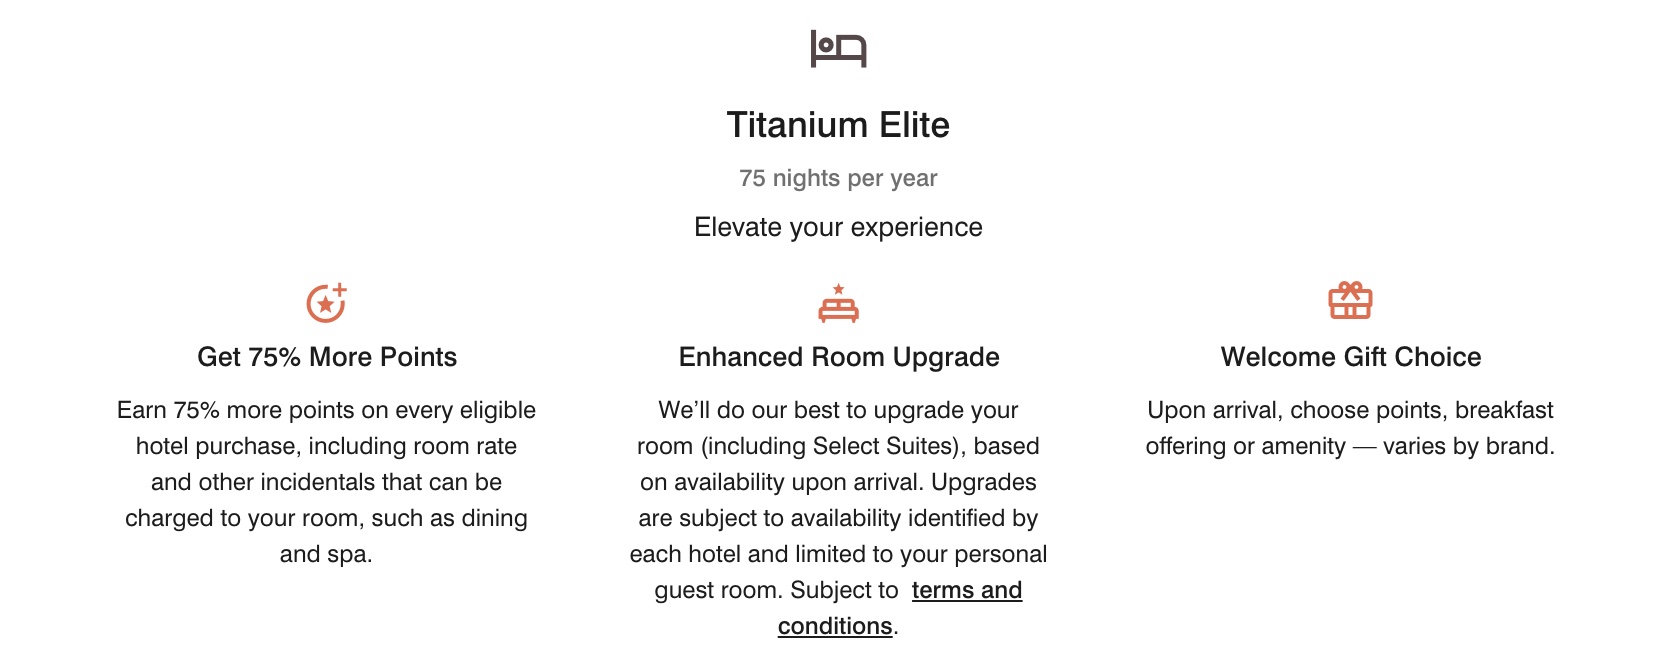 Titanium Elite Benefits